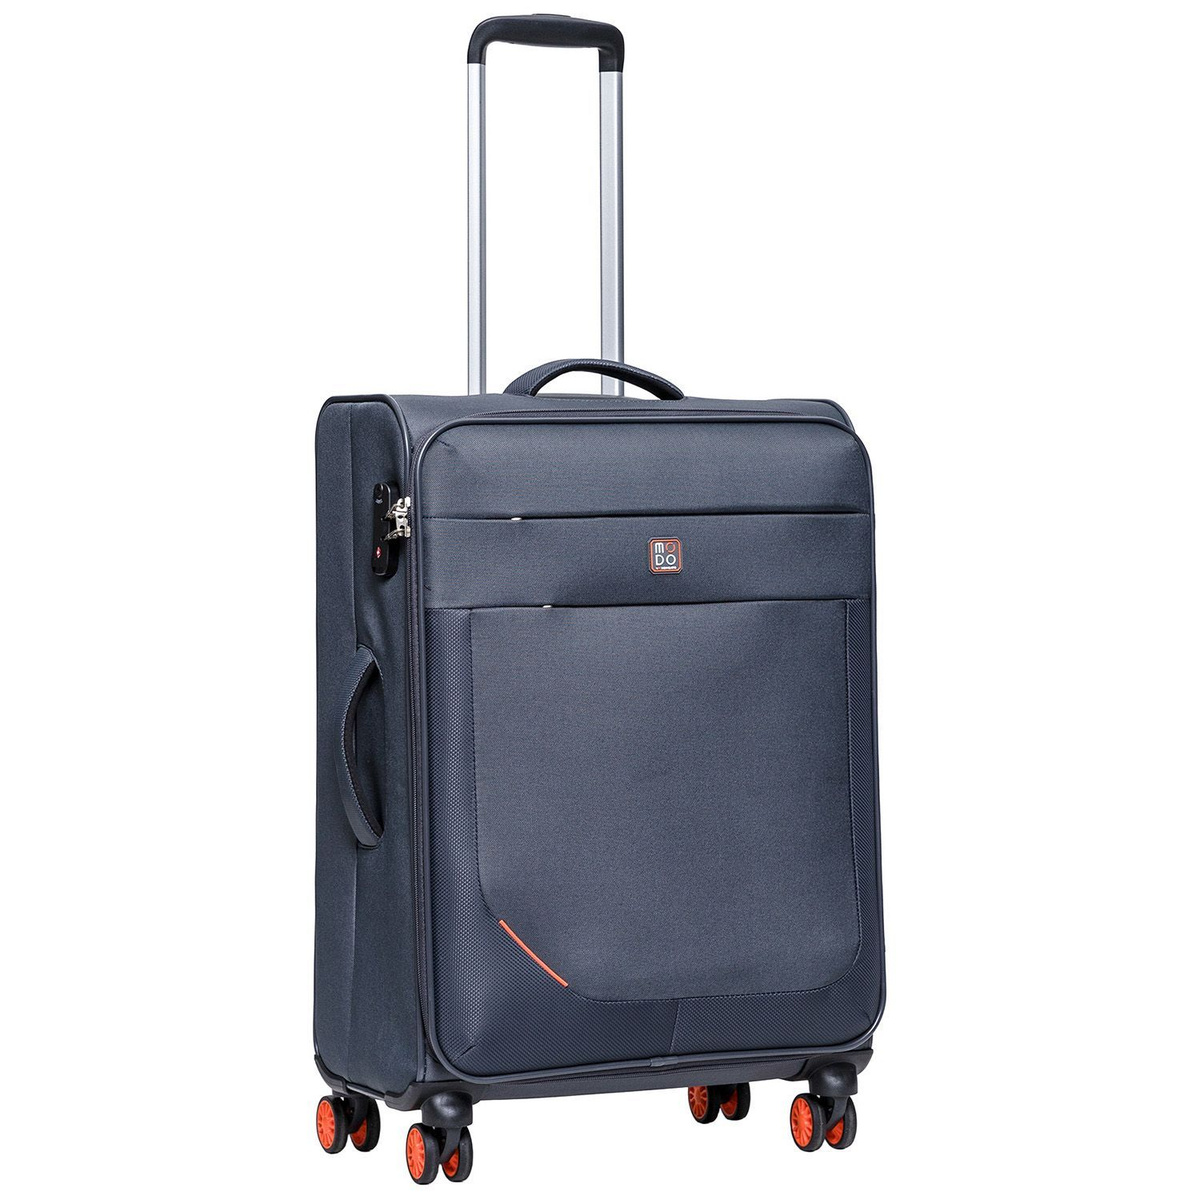 Размер чемодана: 44x67x26 см Вес чемодана: 3,2 кг Объём чемодана: 73 л